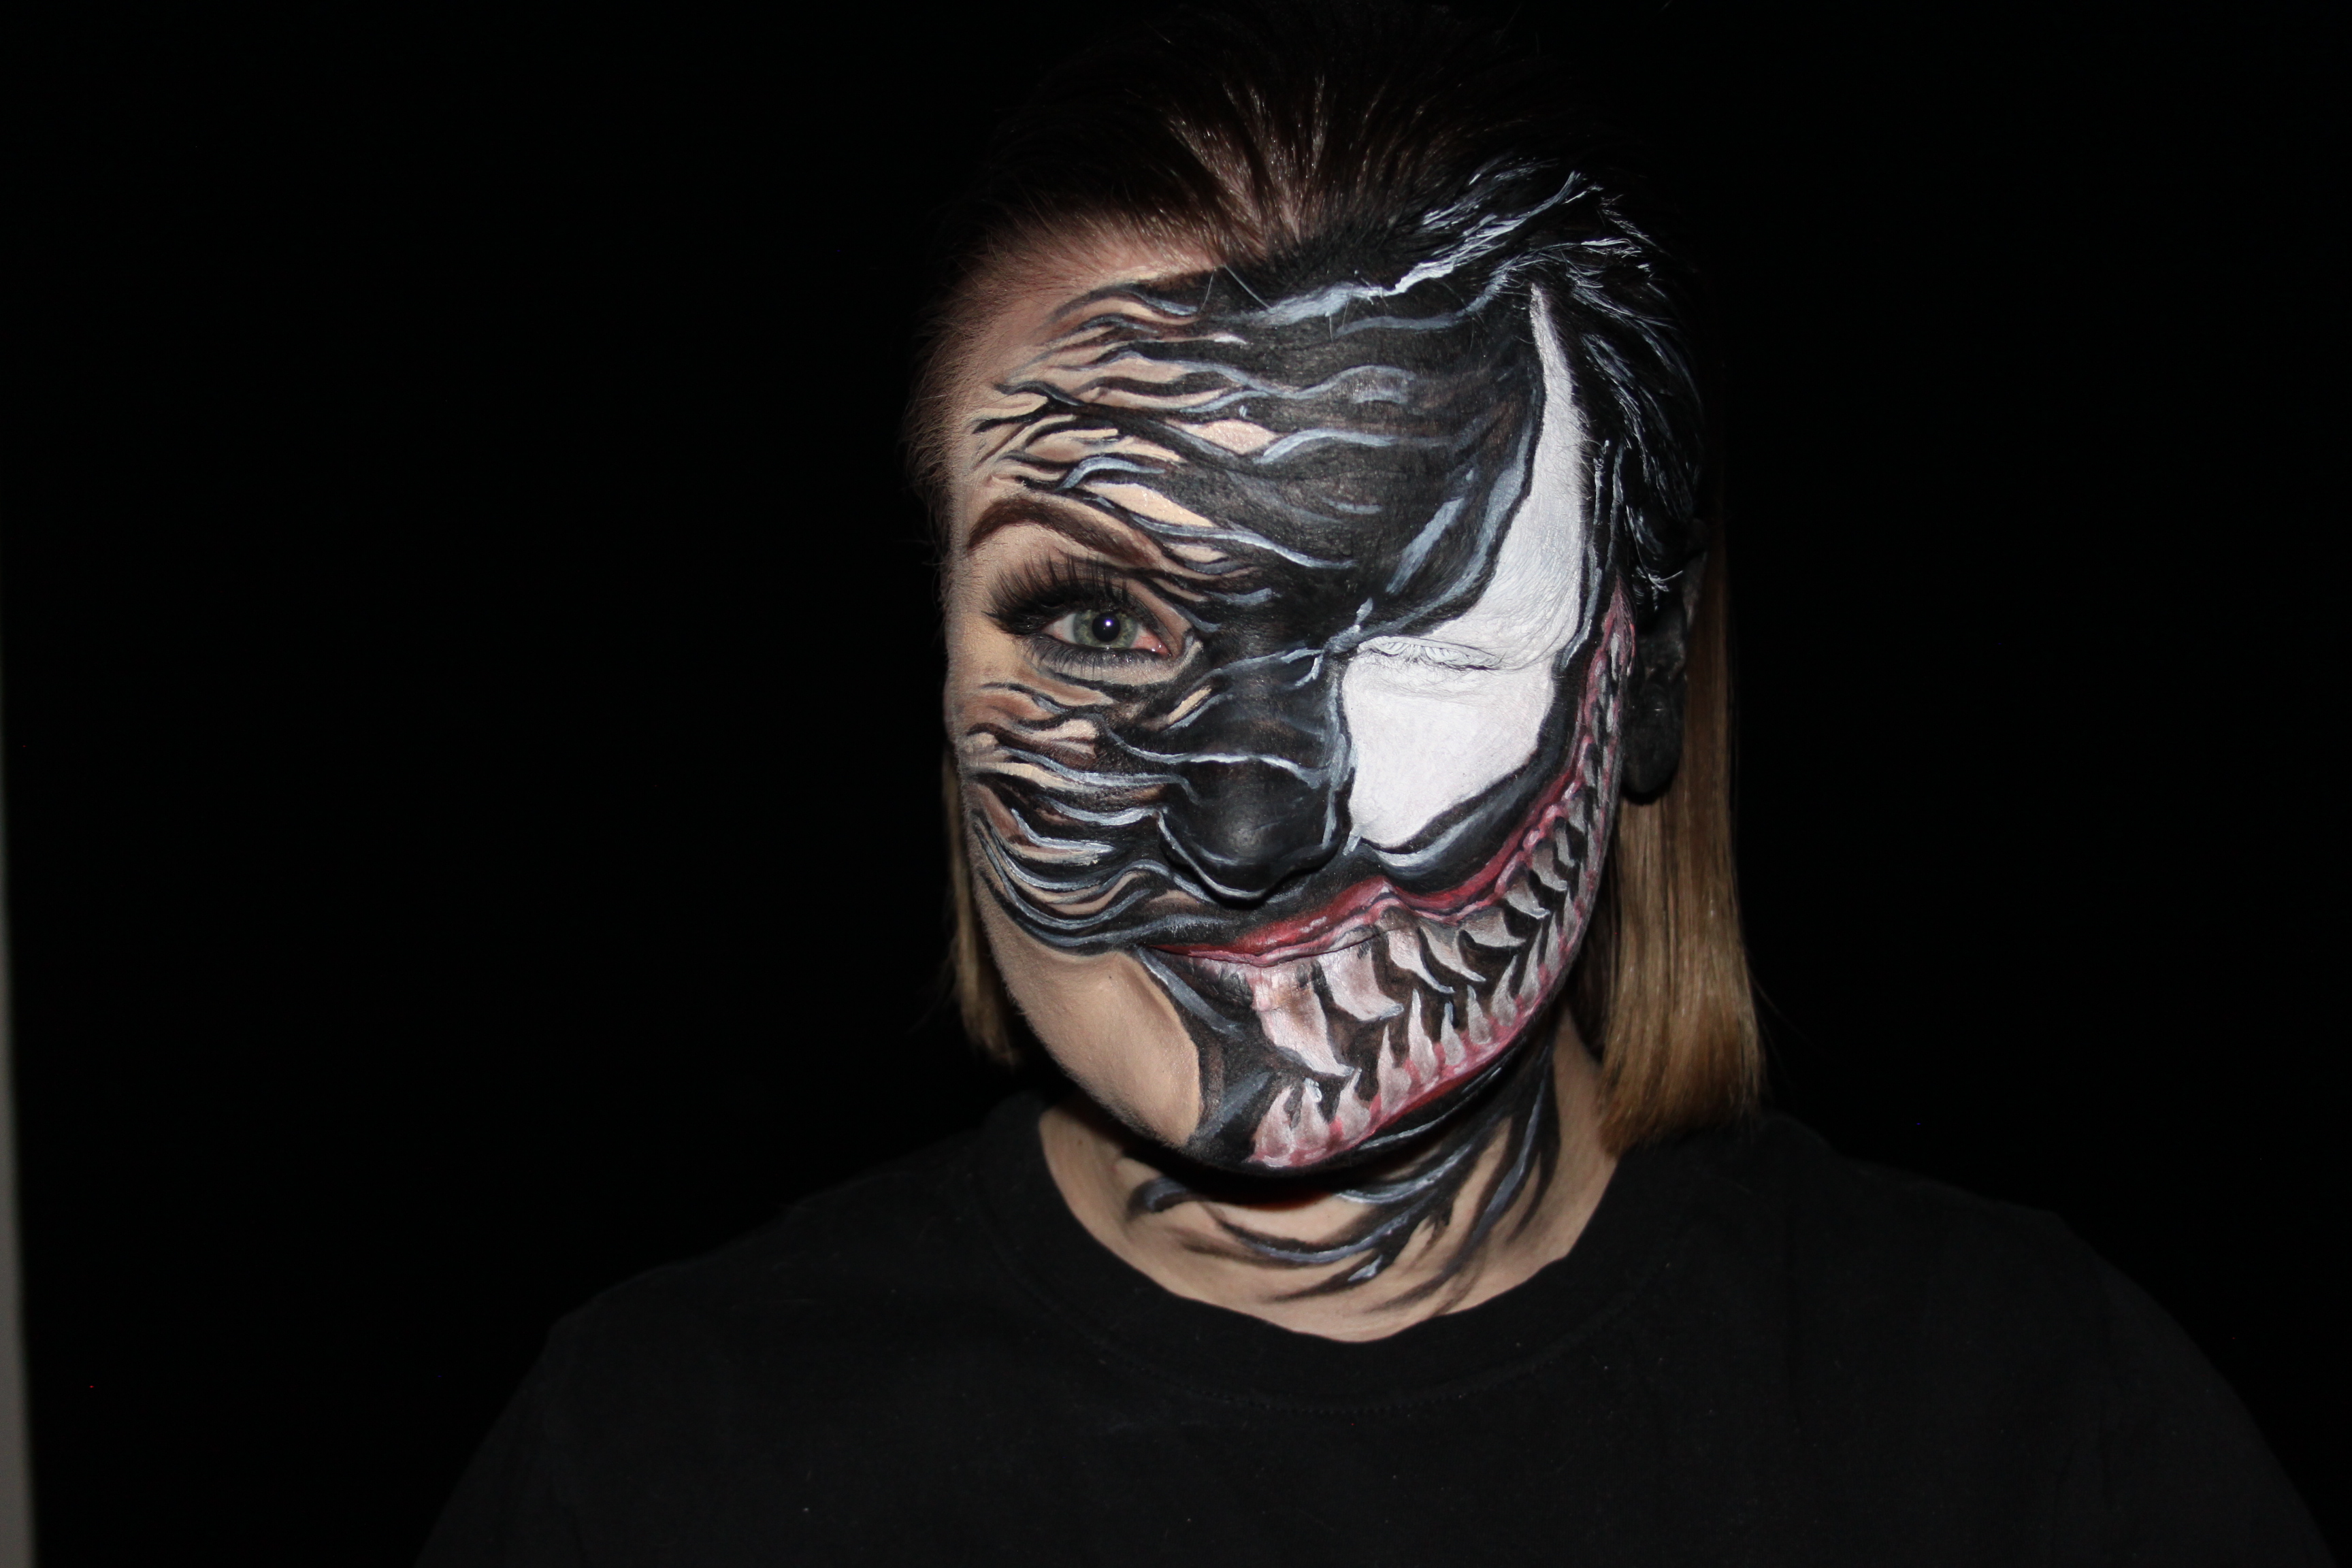 Venom facepaint by Planbeebeauty on DeviantArt